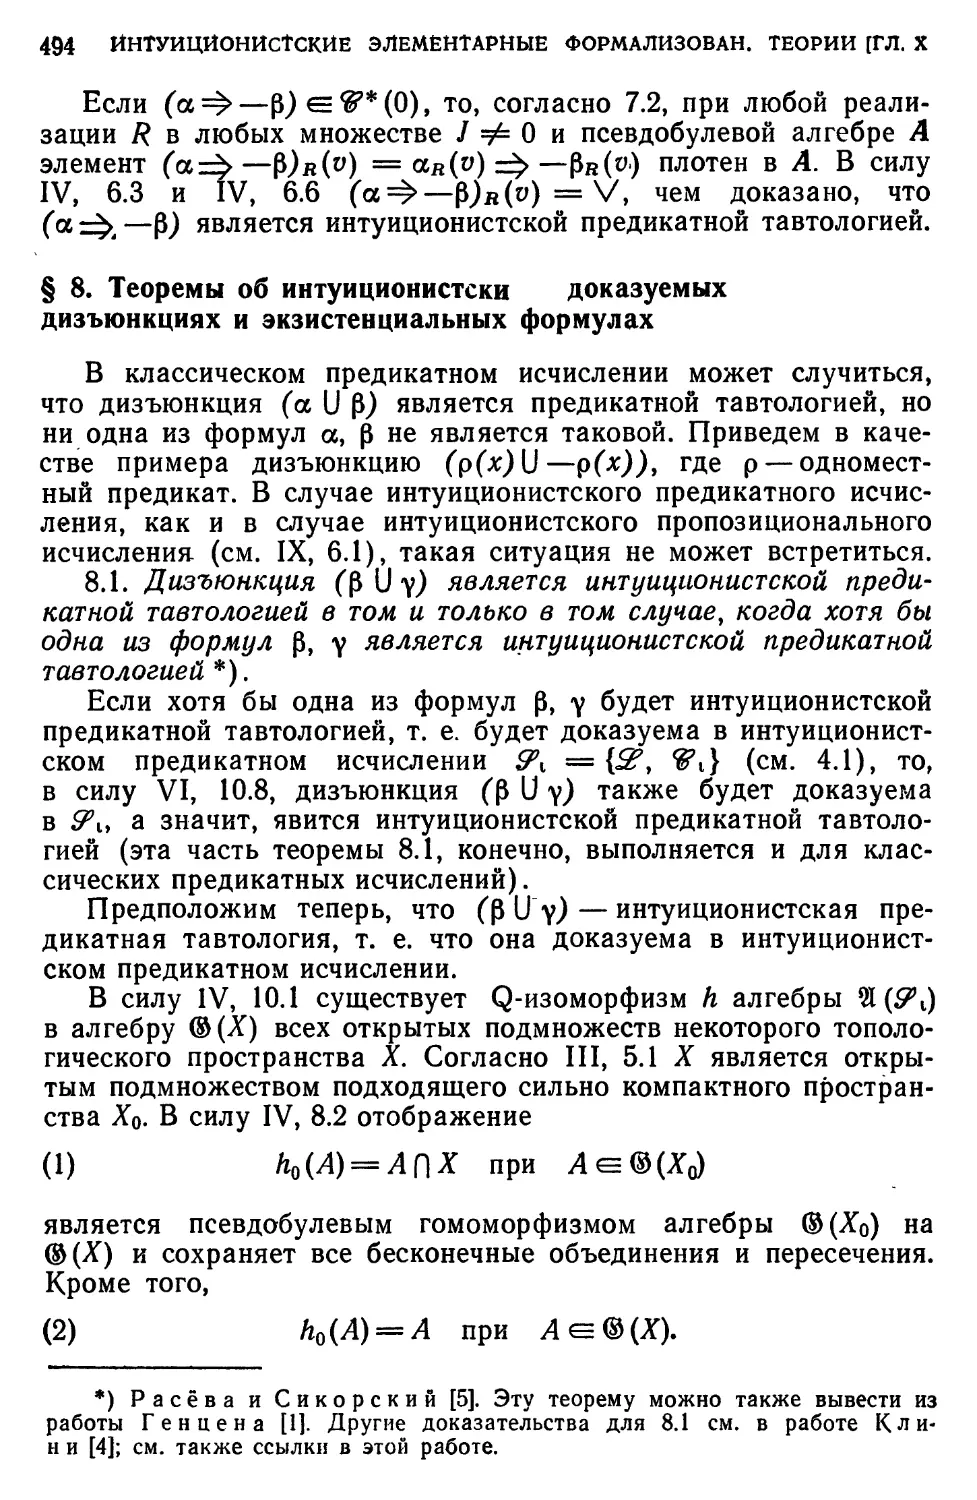 § 8. Теоремы об интуиционистски доказуемых дизъюнкциях и экзистенциальных формулах